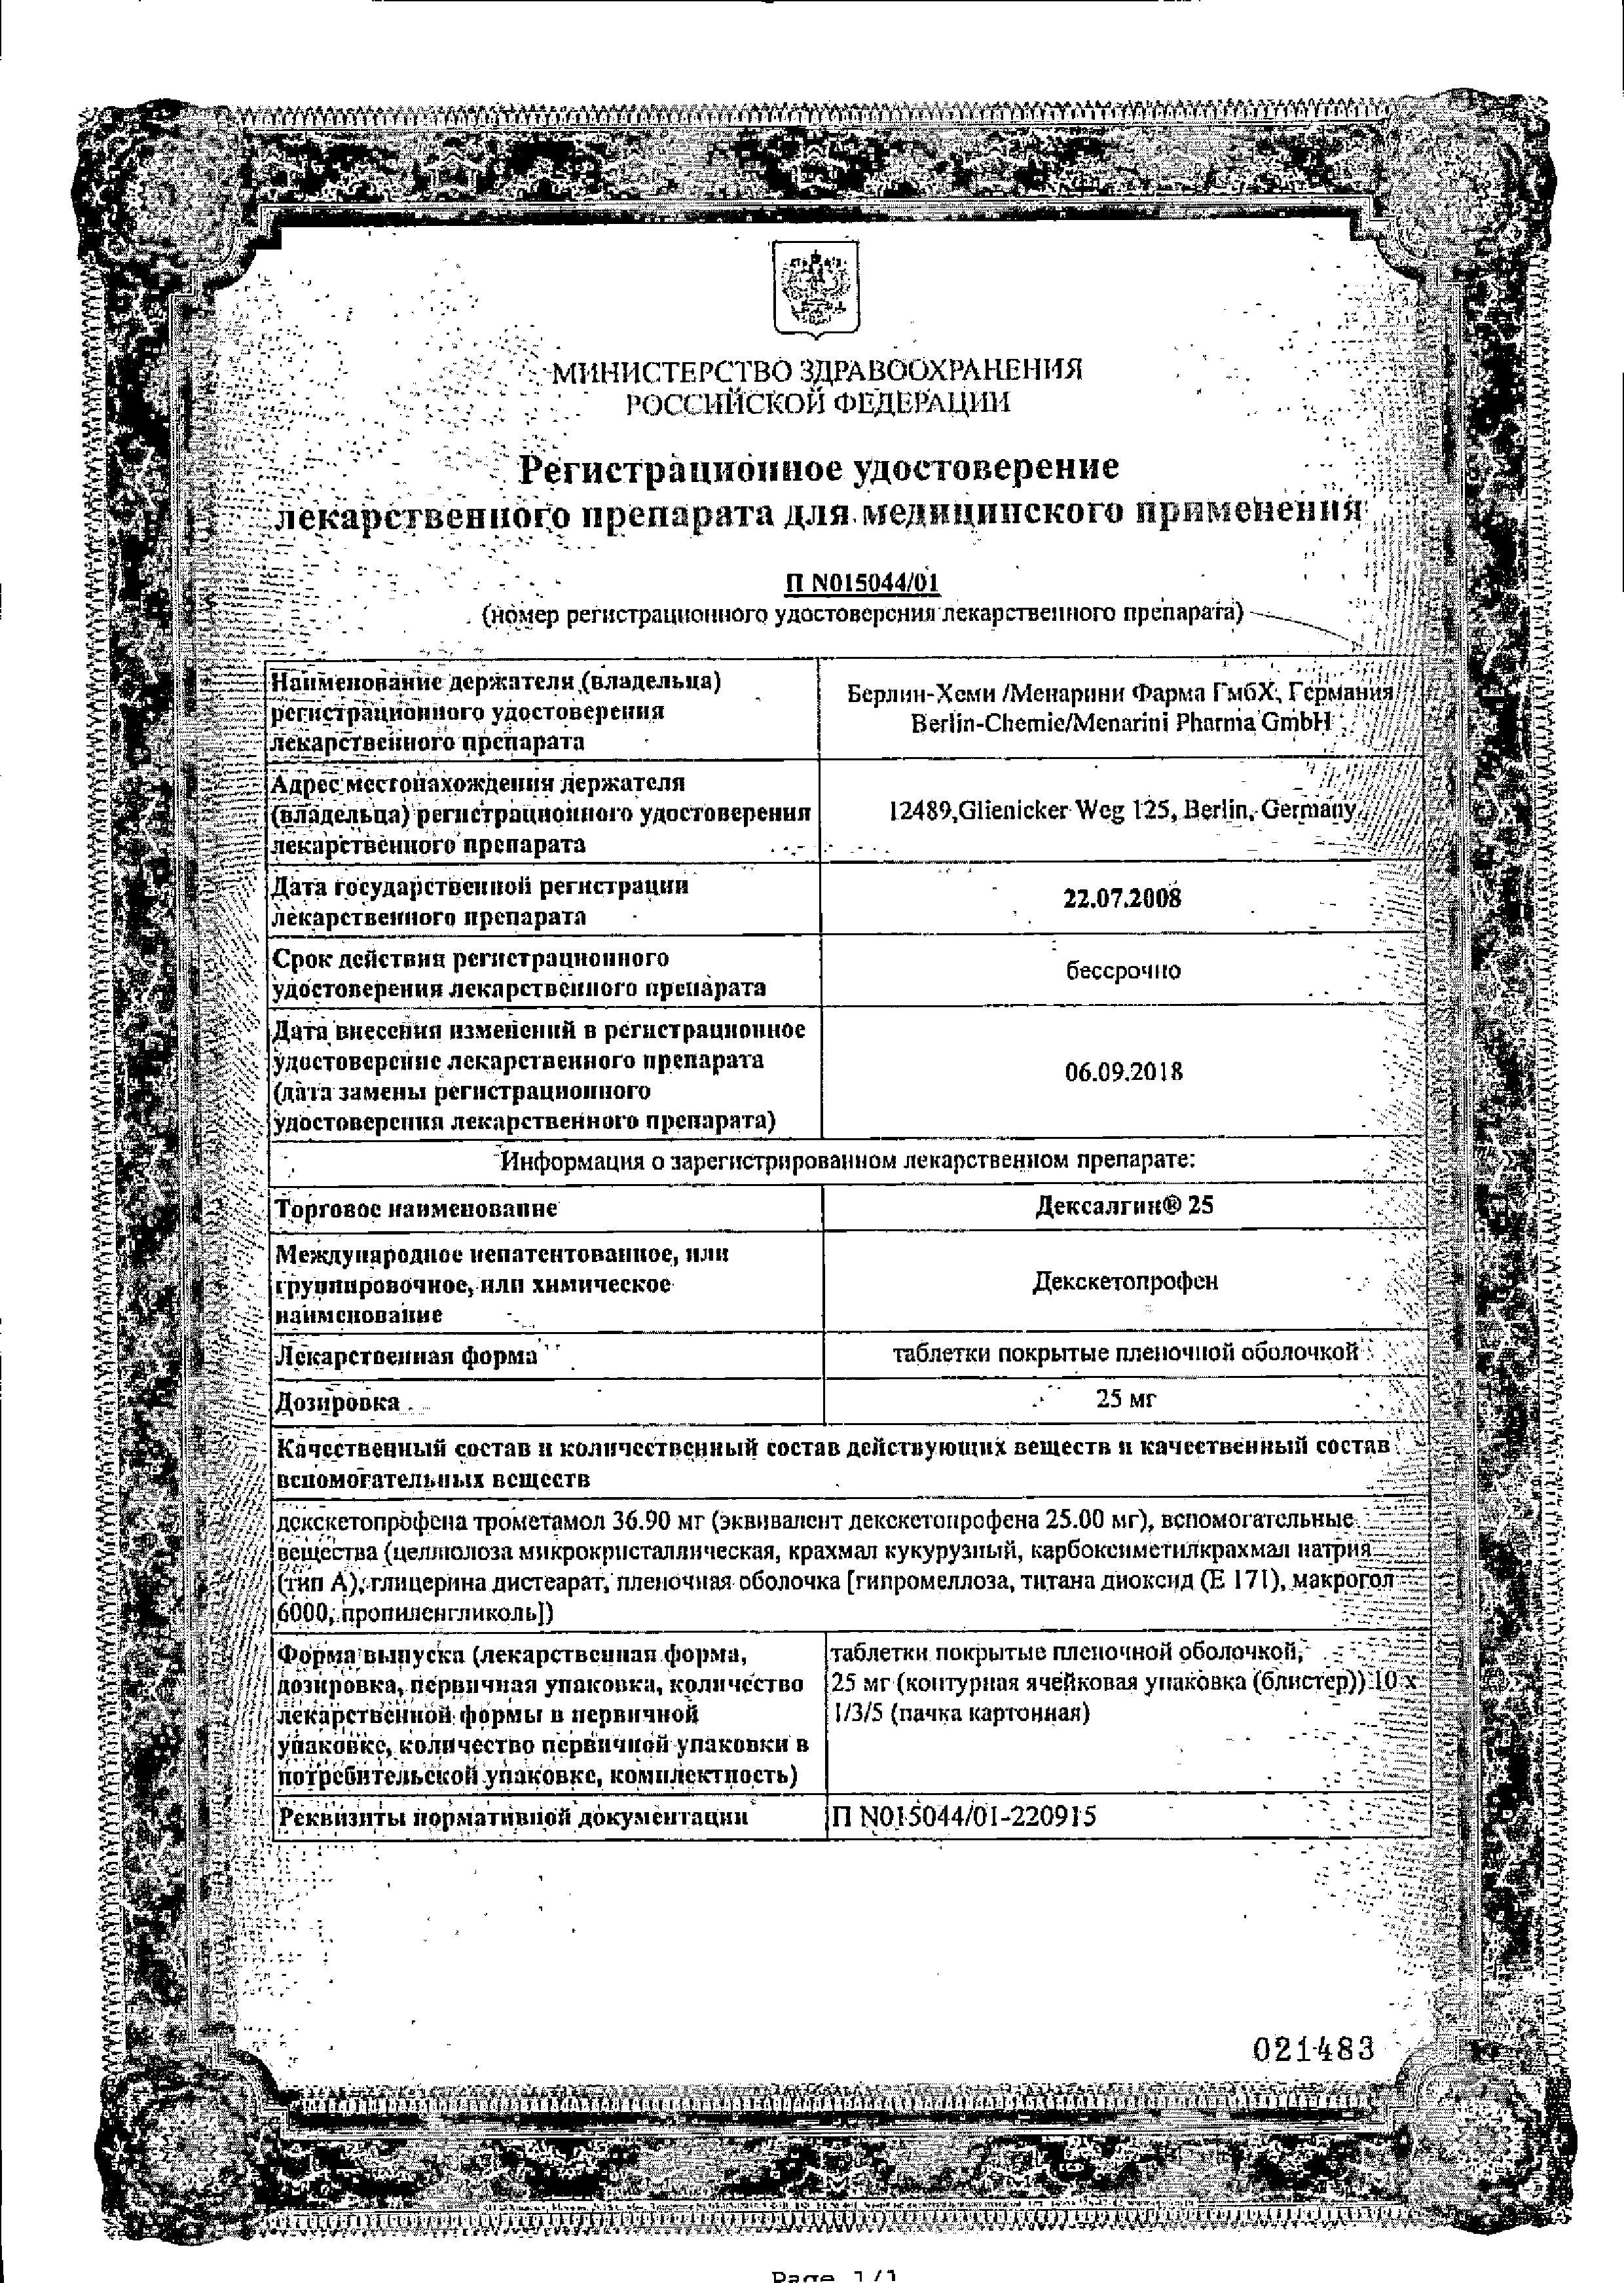 Дексалгин 25 сертификат